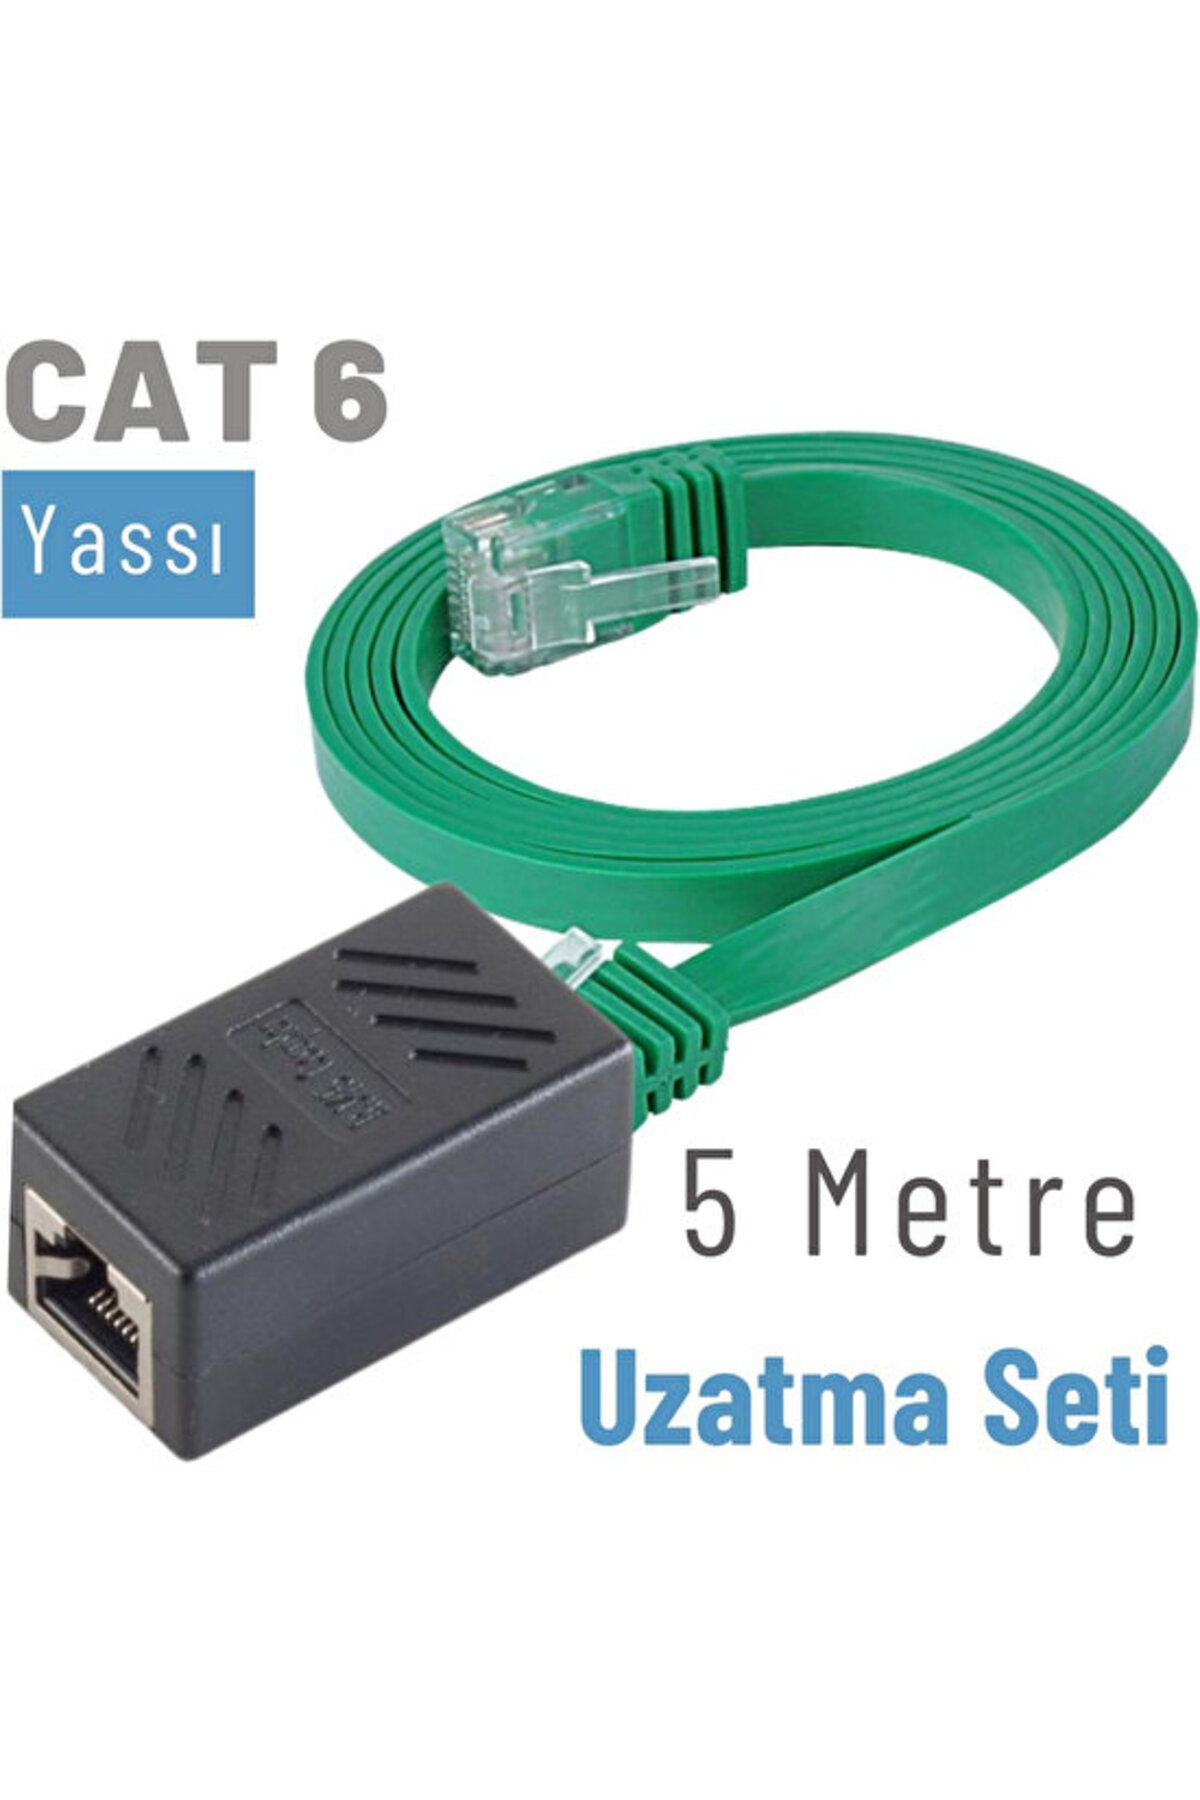 IRENIS Cat6 Kablo 5 Metre Uzatma Seti, Yassı Ethernet Kablo Ve Ekleyici, Yeşil